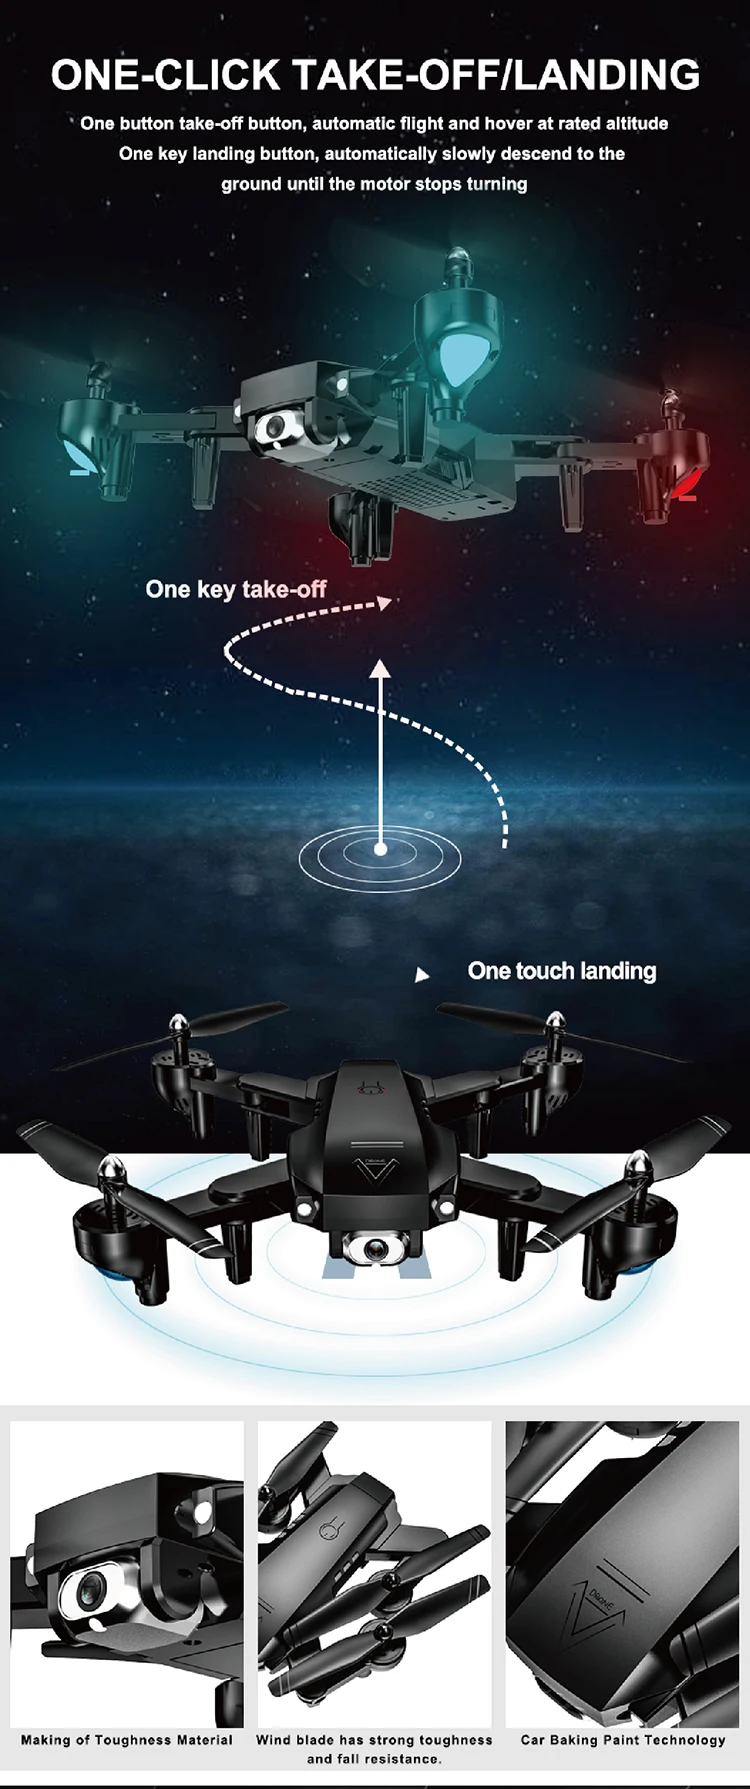 A908 Дрон 1080p HD Антенна Профессиональный RC дроны Wi-Fi fpv Quadcopter интеллигентая(ый) следите за полета 20 минутах RC вертолет игрушка